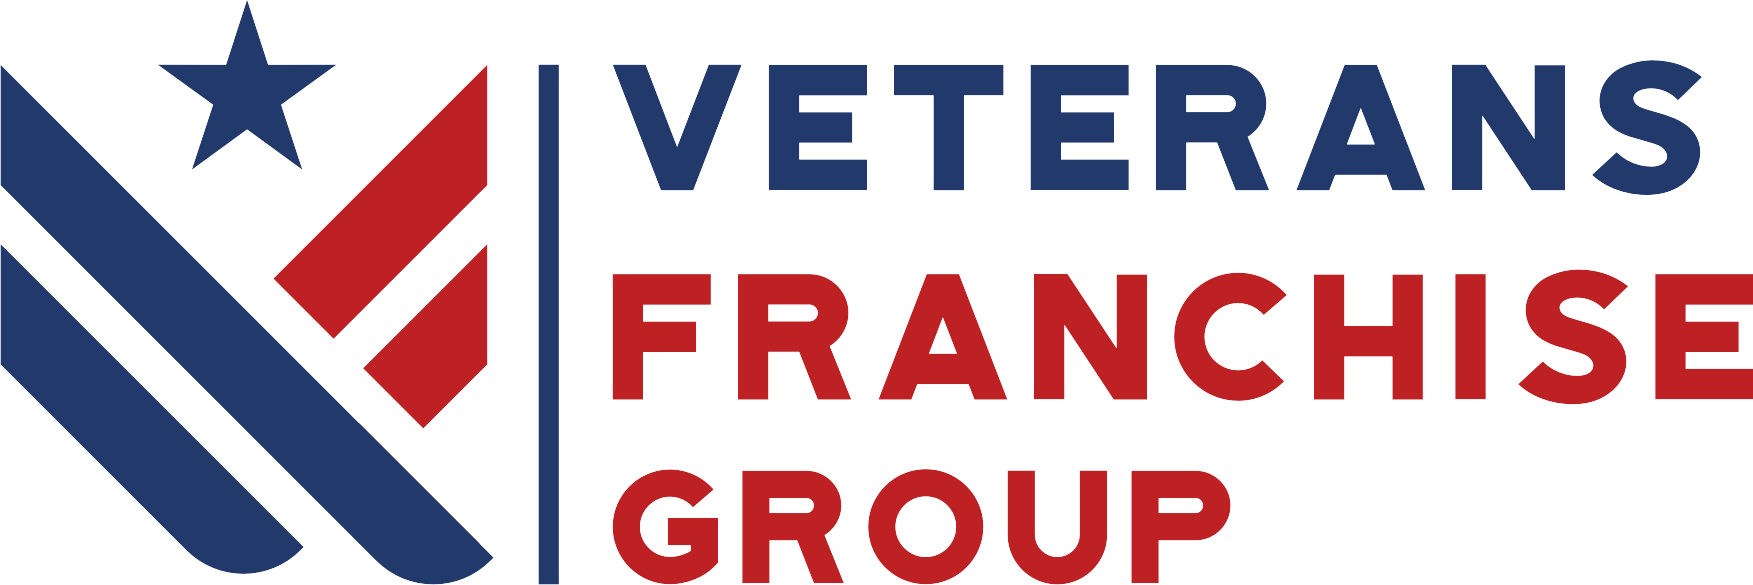 Zorakle Business Builder Assessment | Veterans Franchise Group